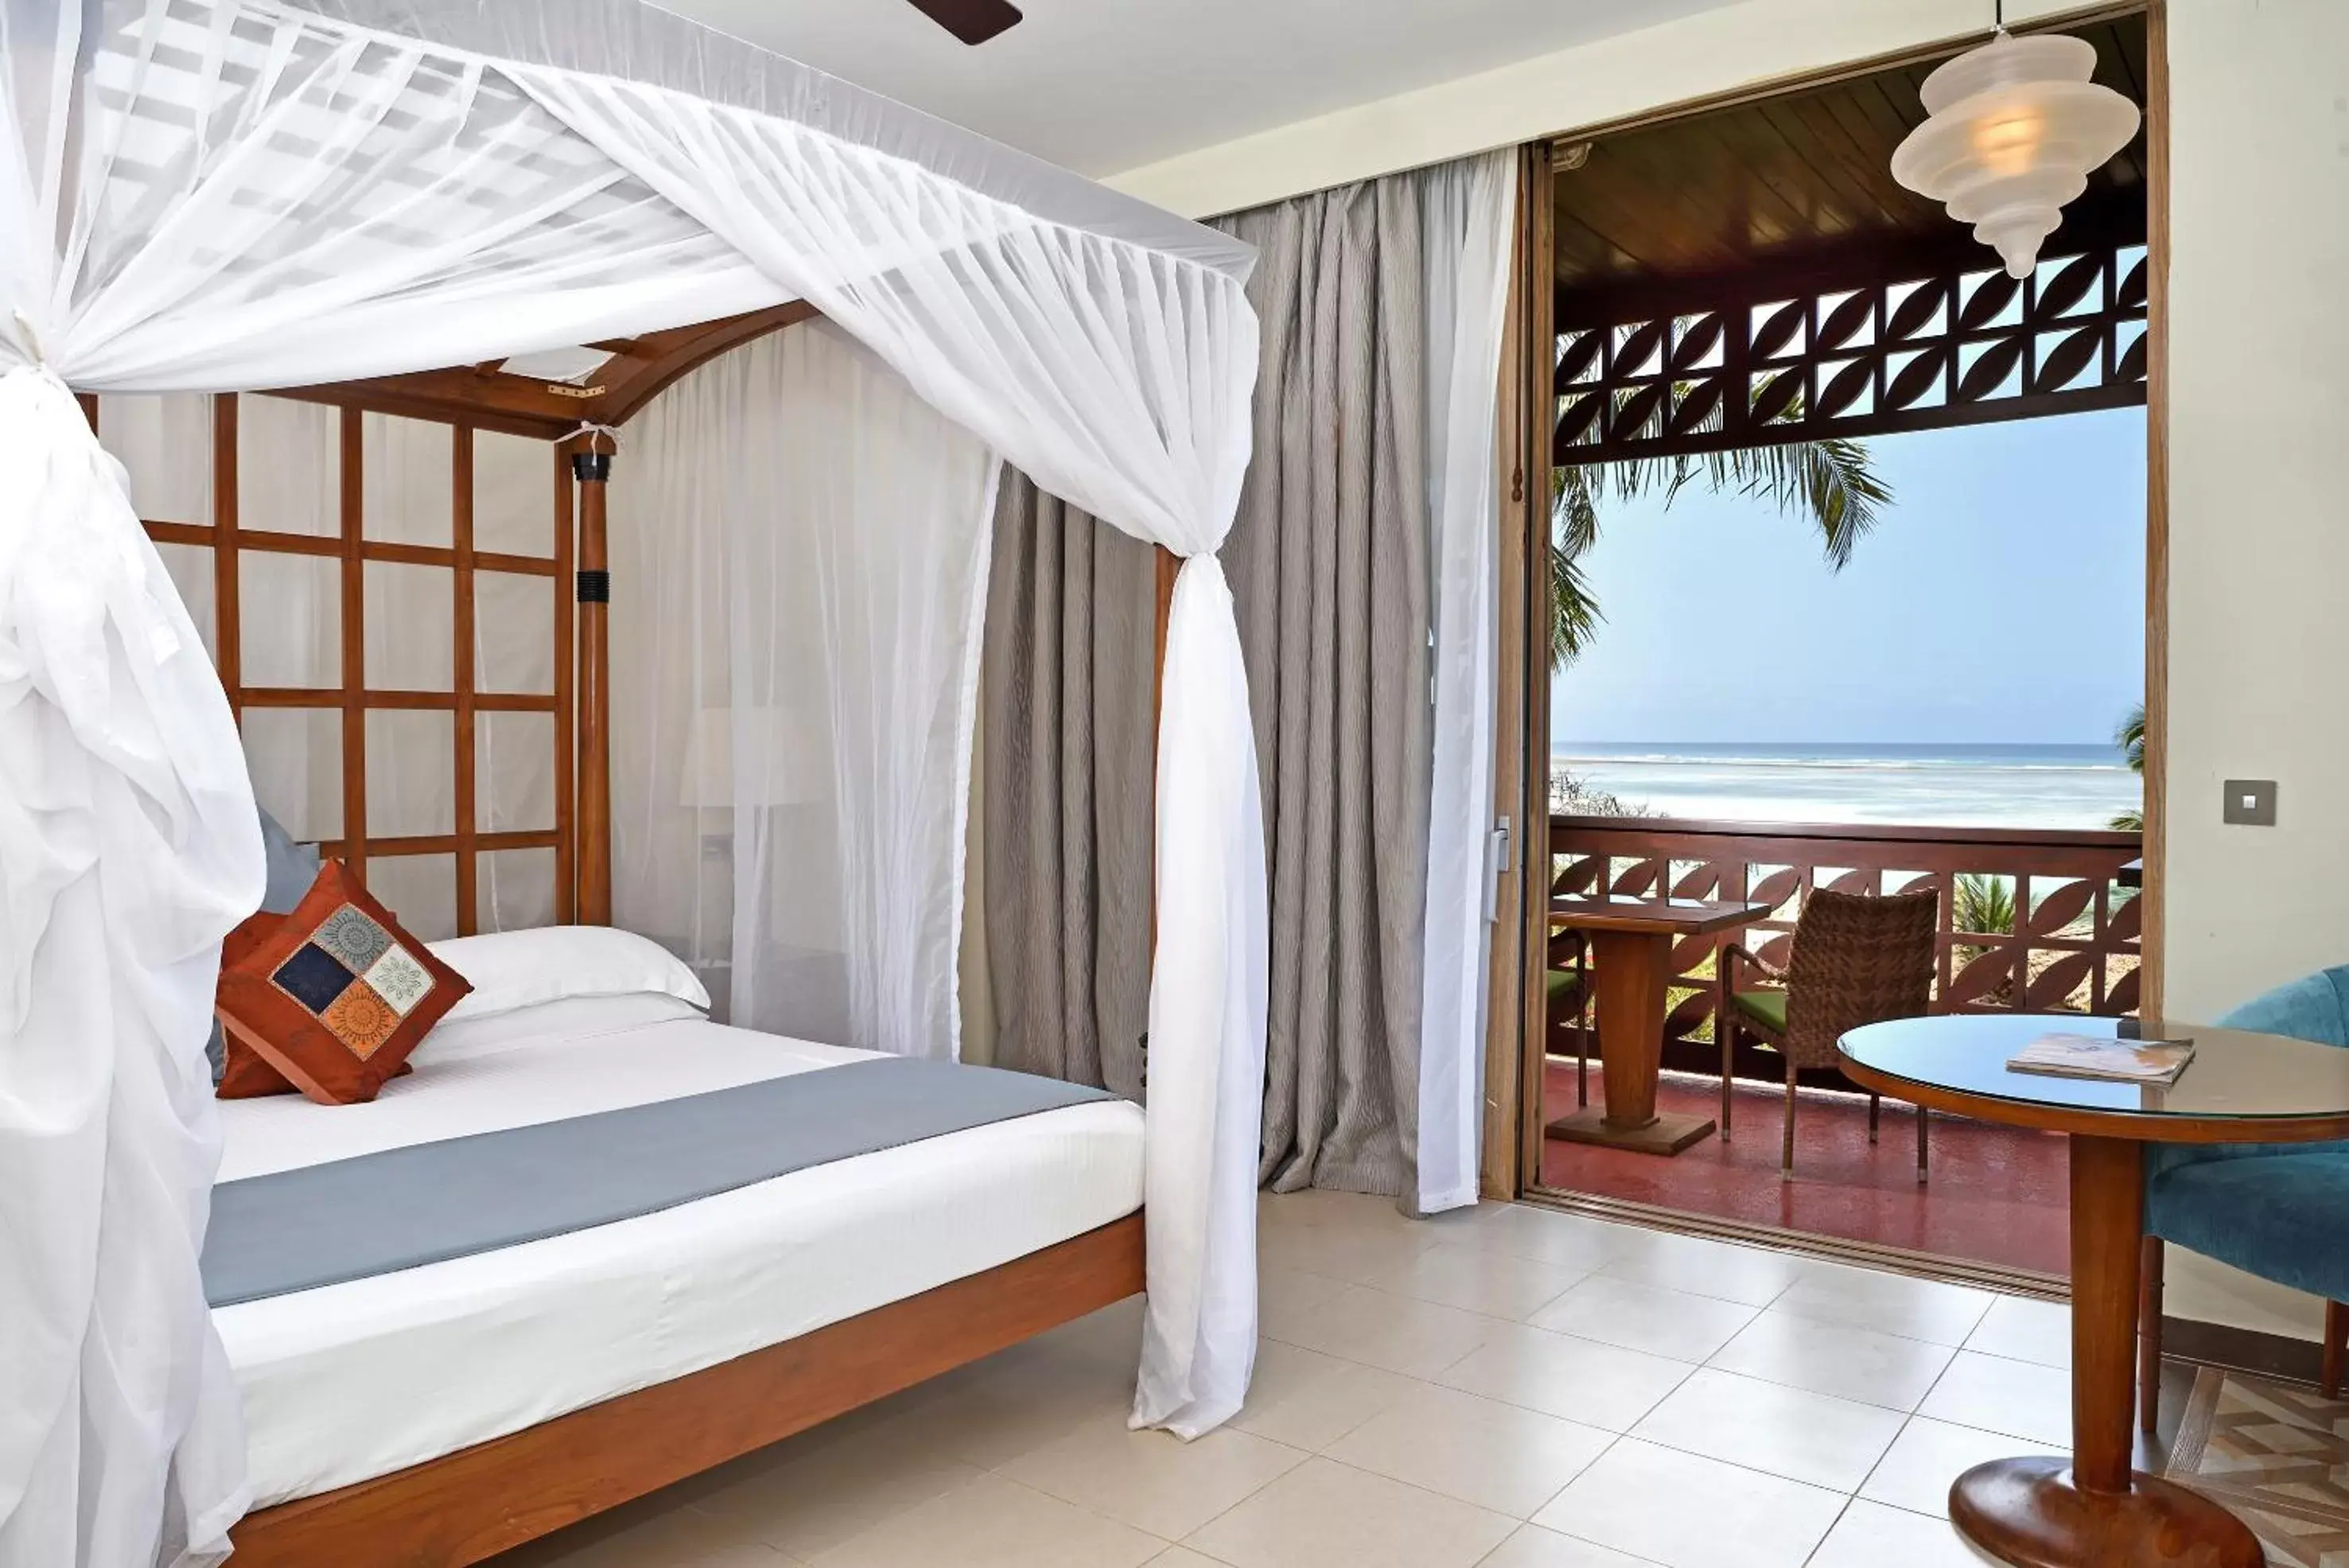 Melia Interconnected Room with Terrace in Melia Zanzibar